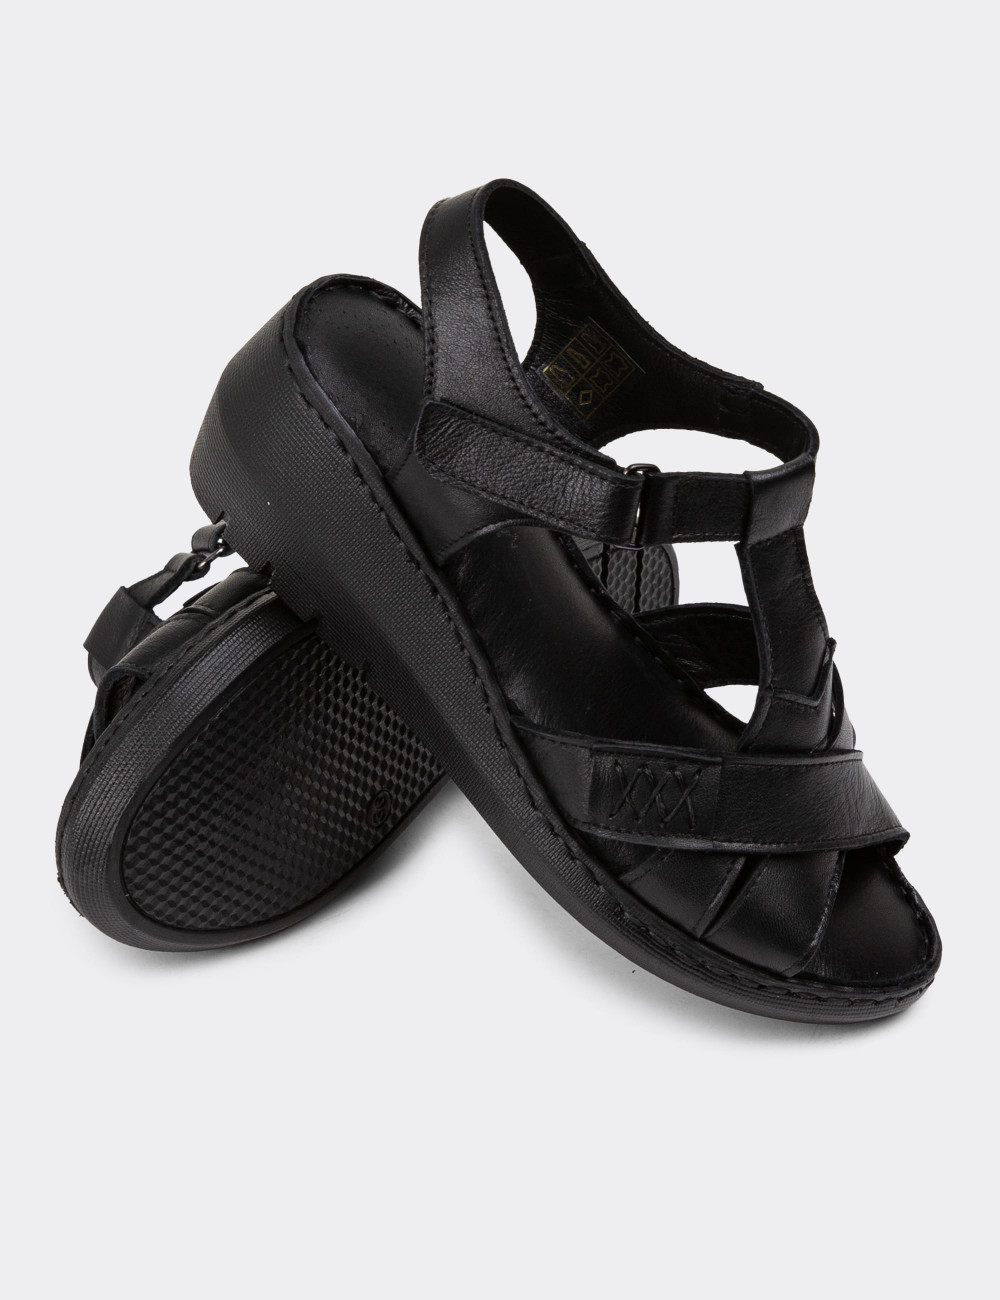 Hakiki Deri Siyah Dolgu Topuk Kadın Sandalet - SE111ZSYHC01